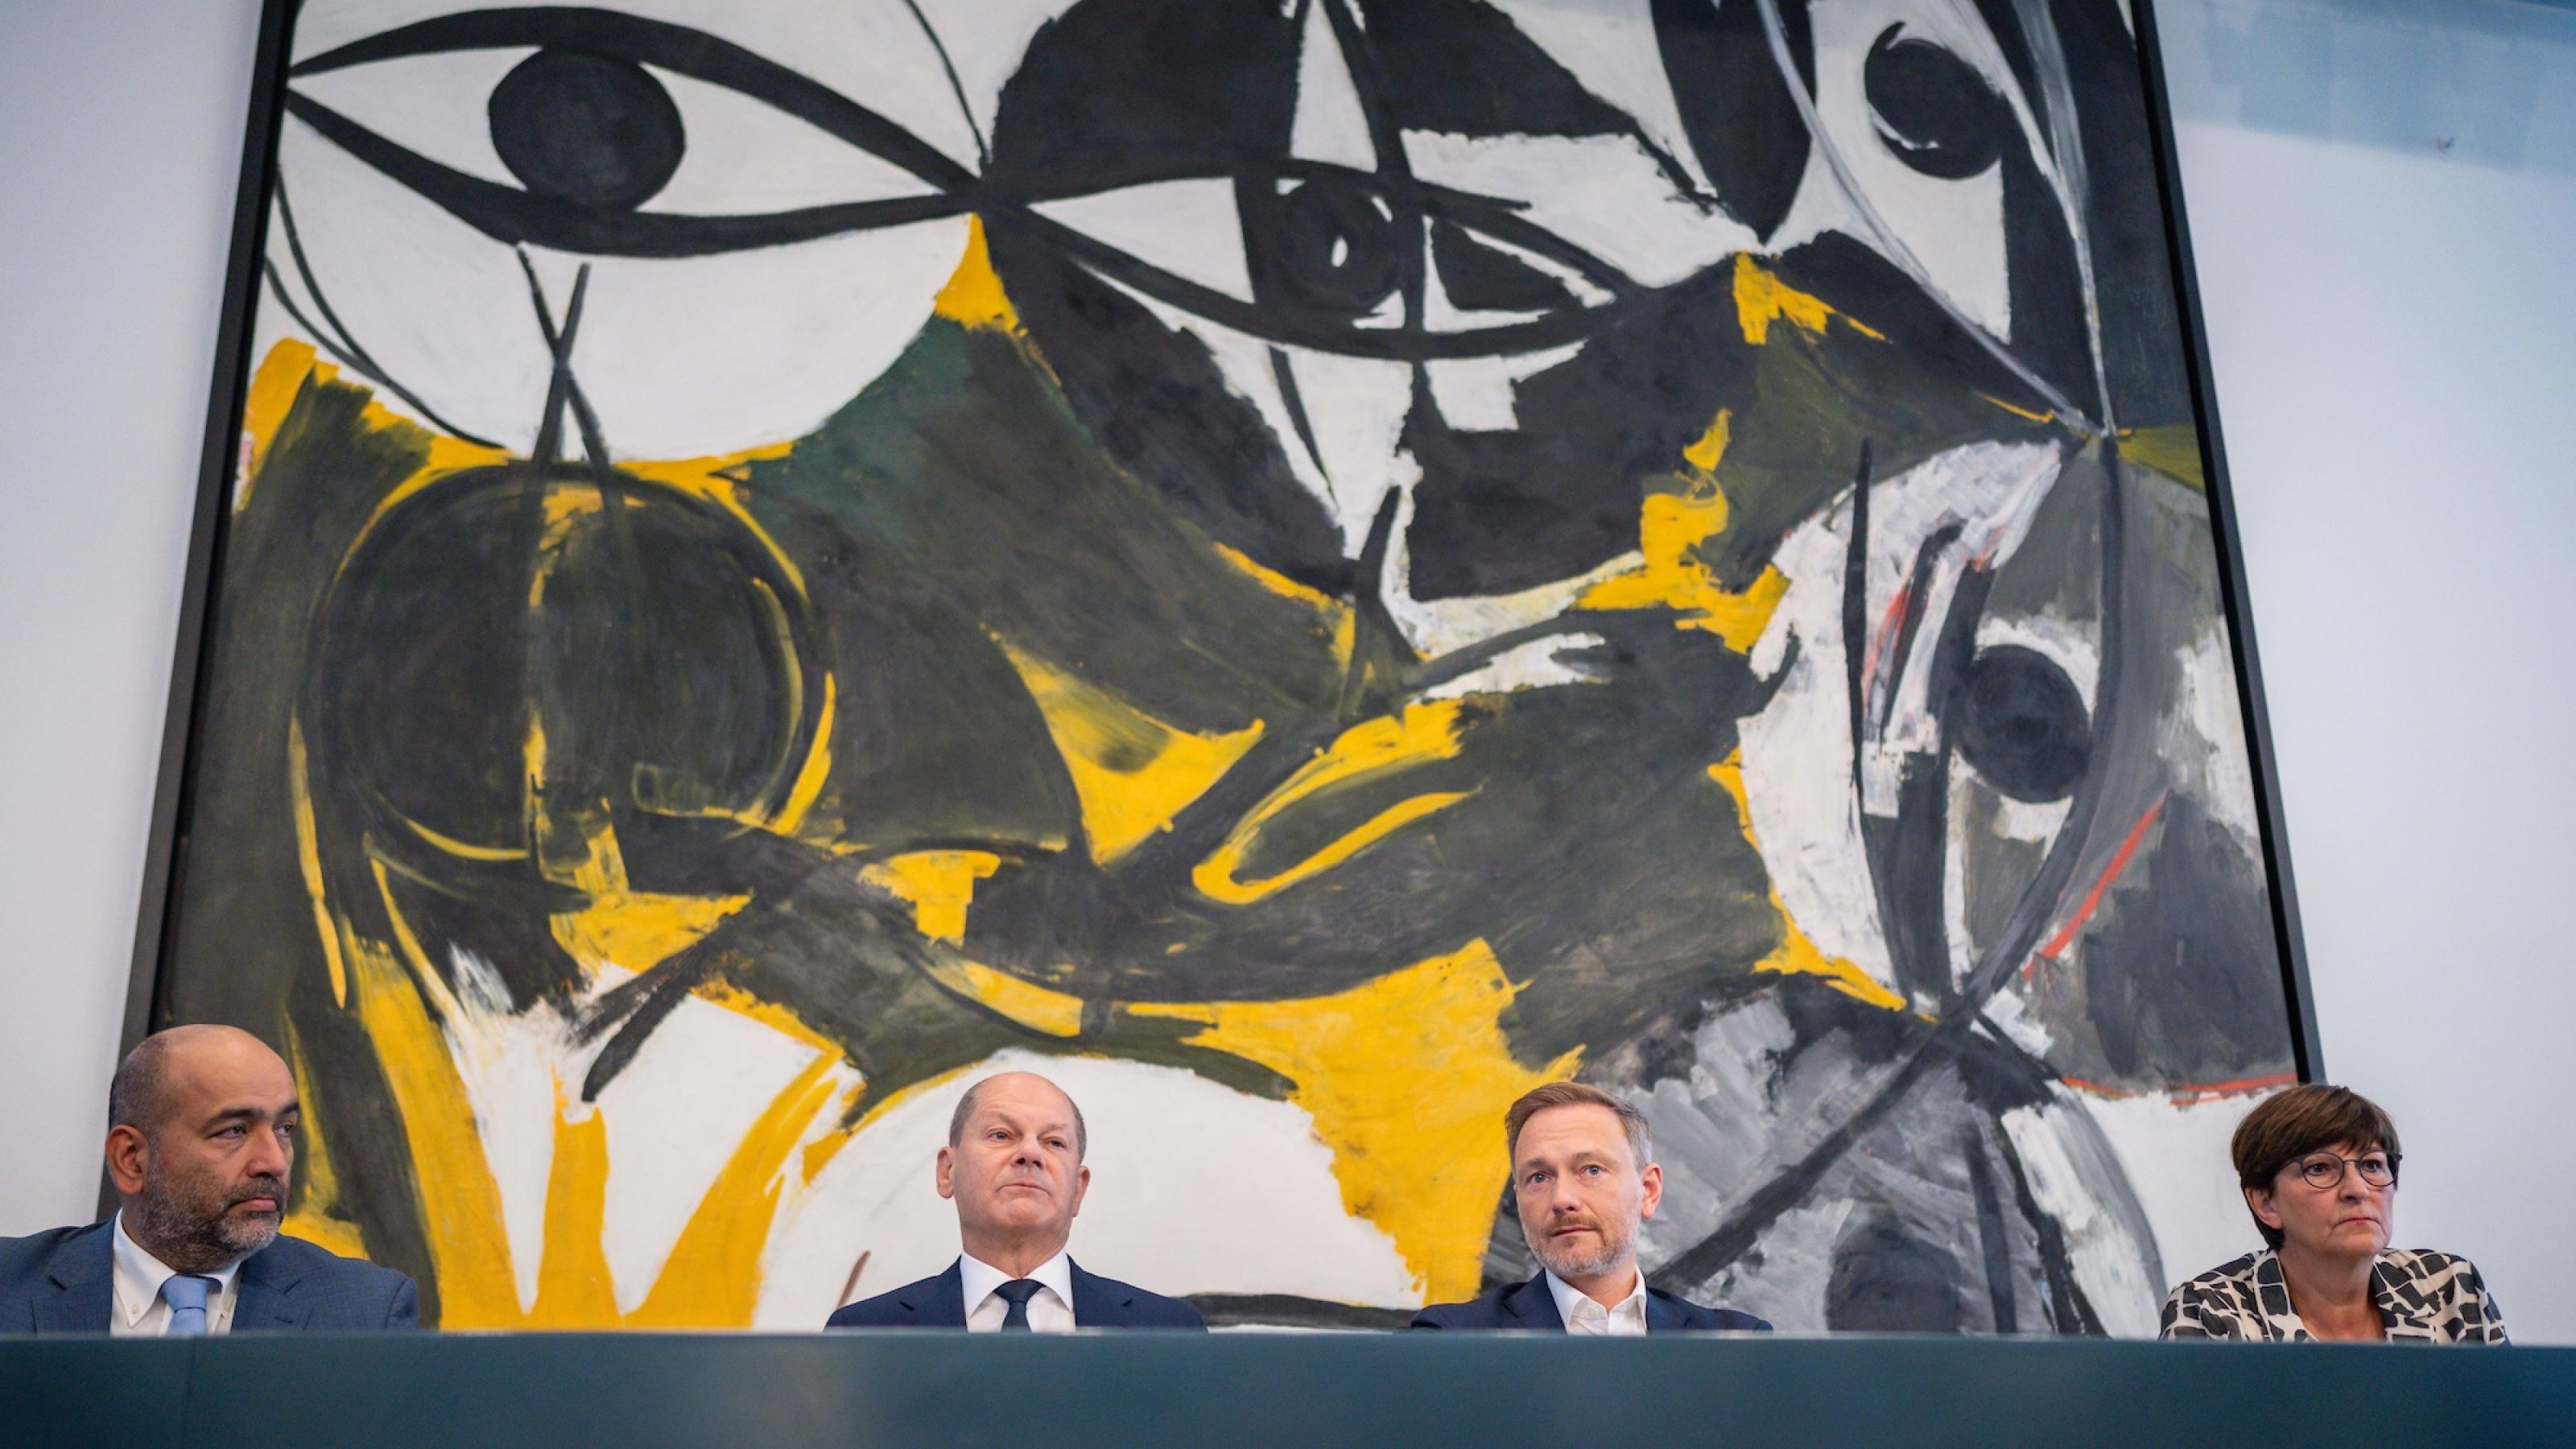 Die vier Politiker sitzen vor einem großen Kunstwerk, das von großen Augen geprägt ist.